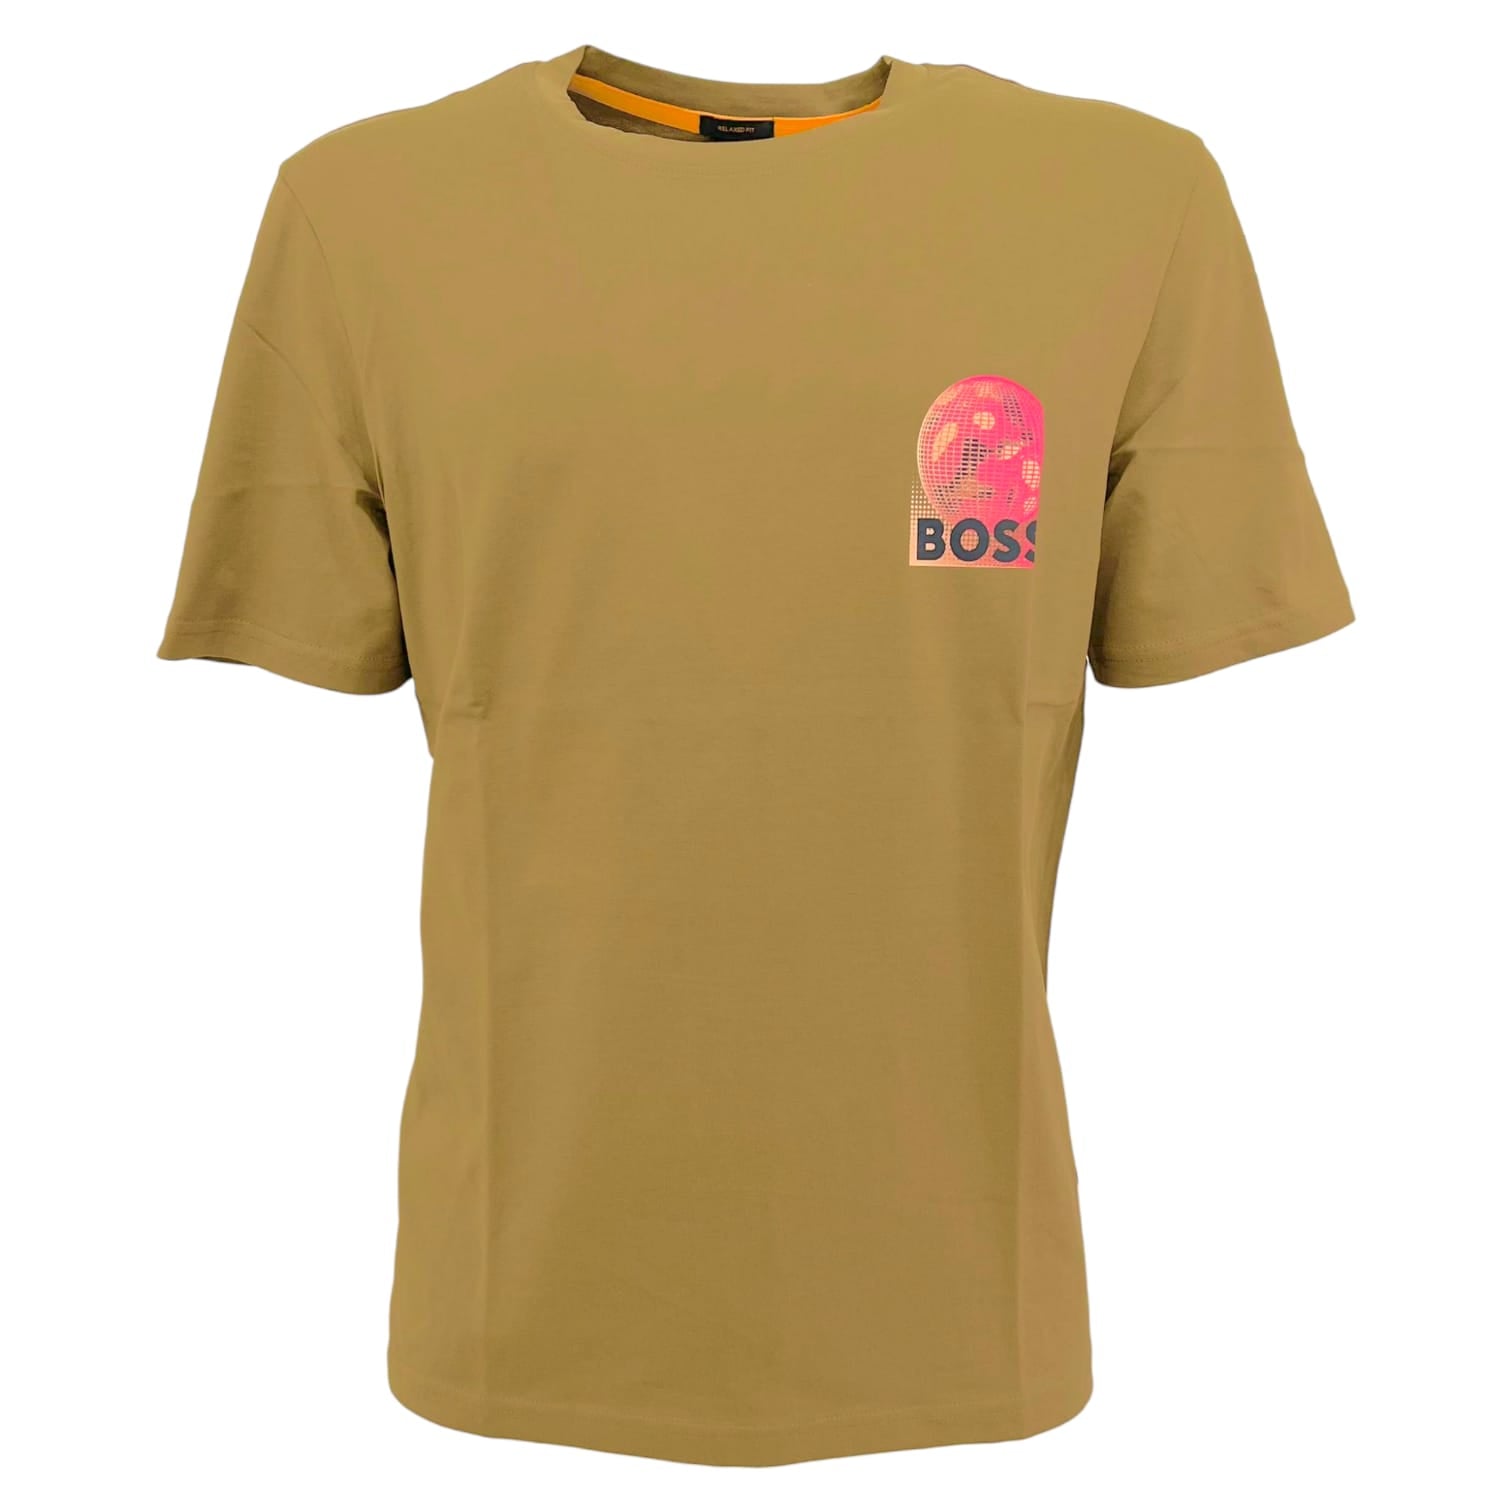 Hugo Boss T-shirt Uomo